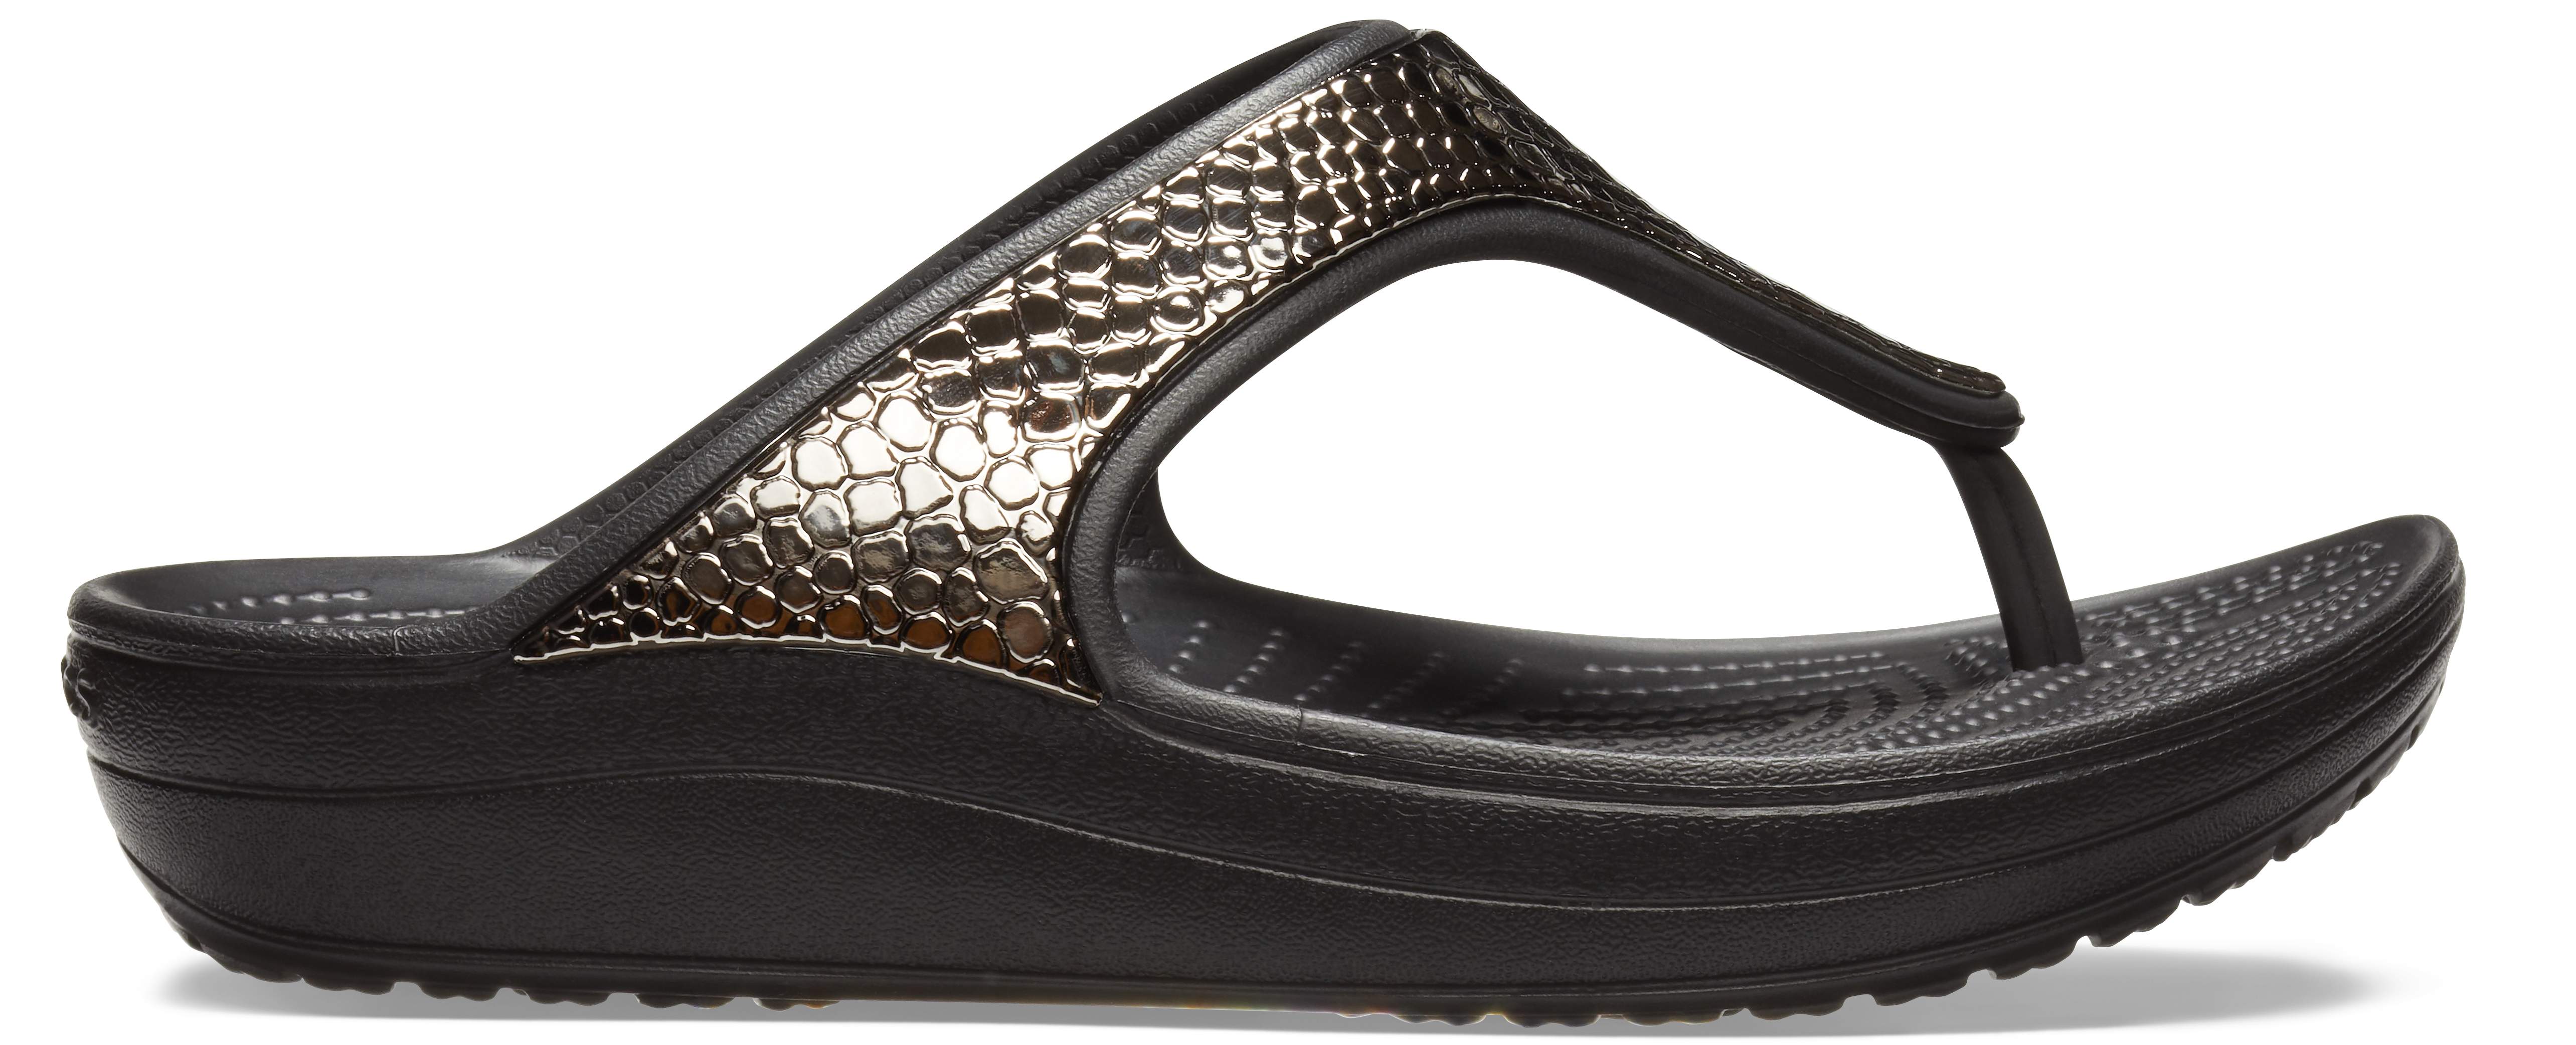 women's crocs sloane metallic texture slide